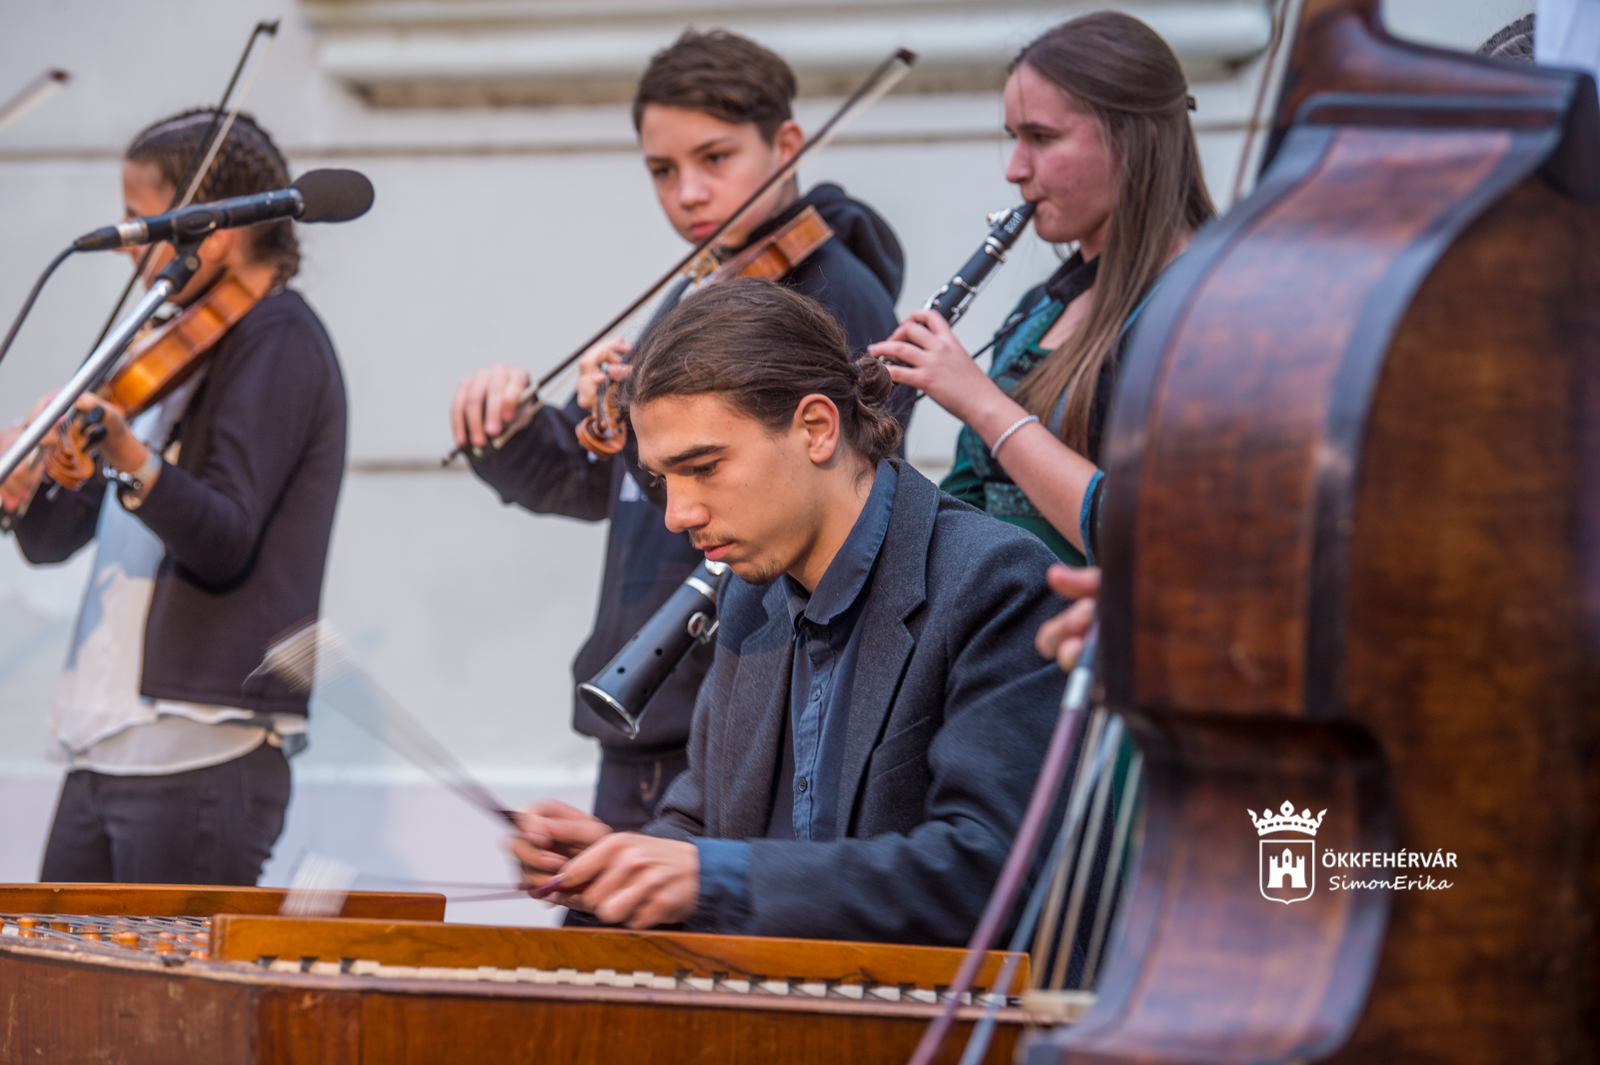 Muzsikaszóval köszöntik a zene világnapját az Országalmánál a Hermann Zeneművészeti Iskola diákjai